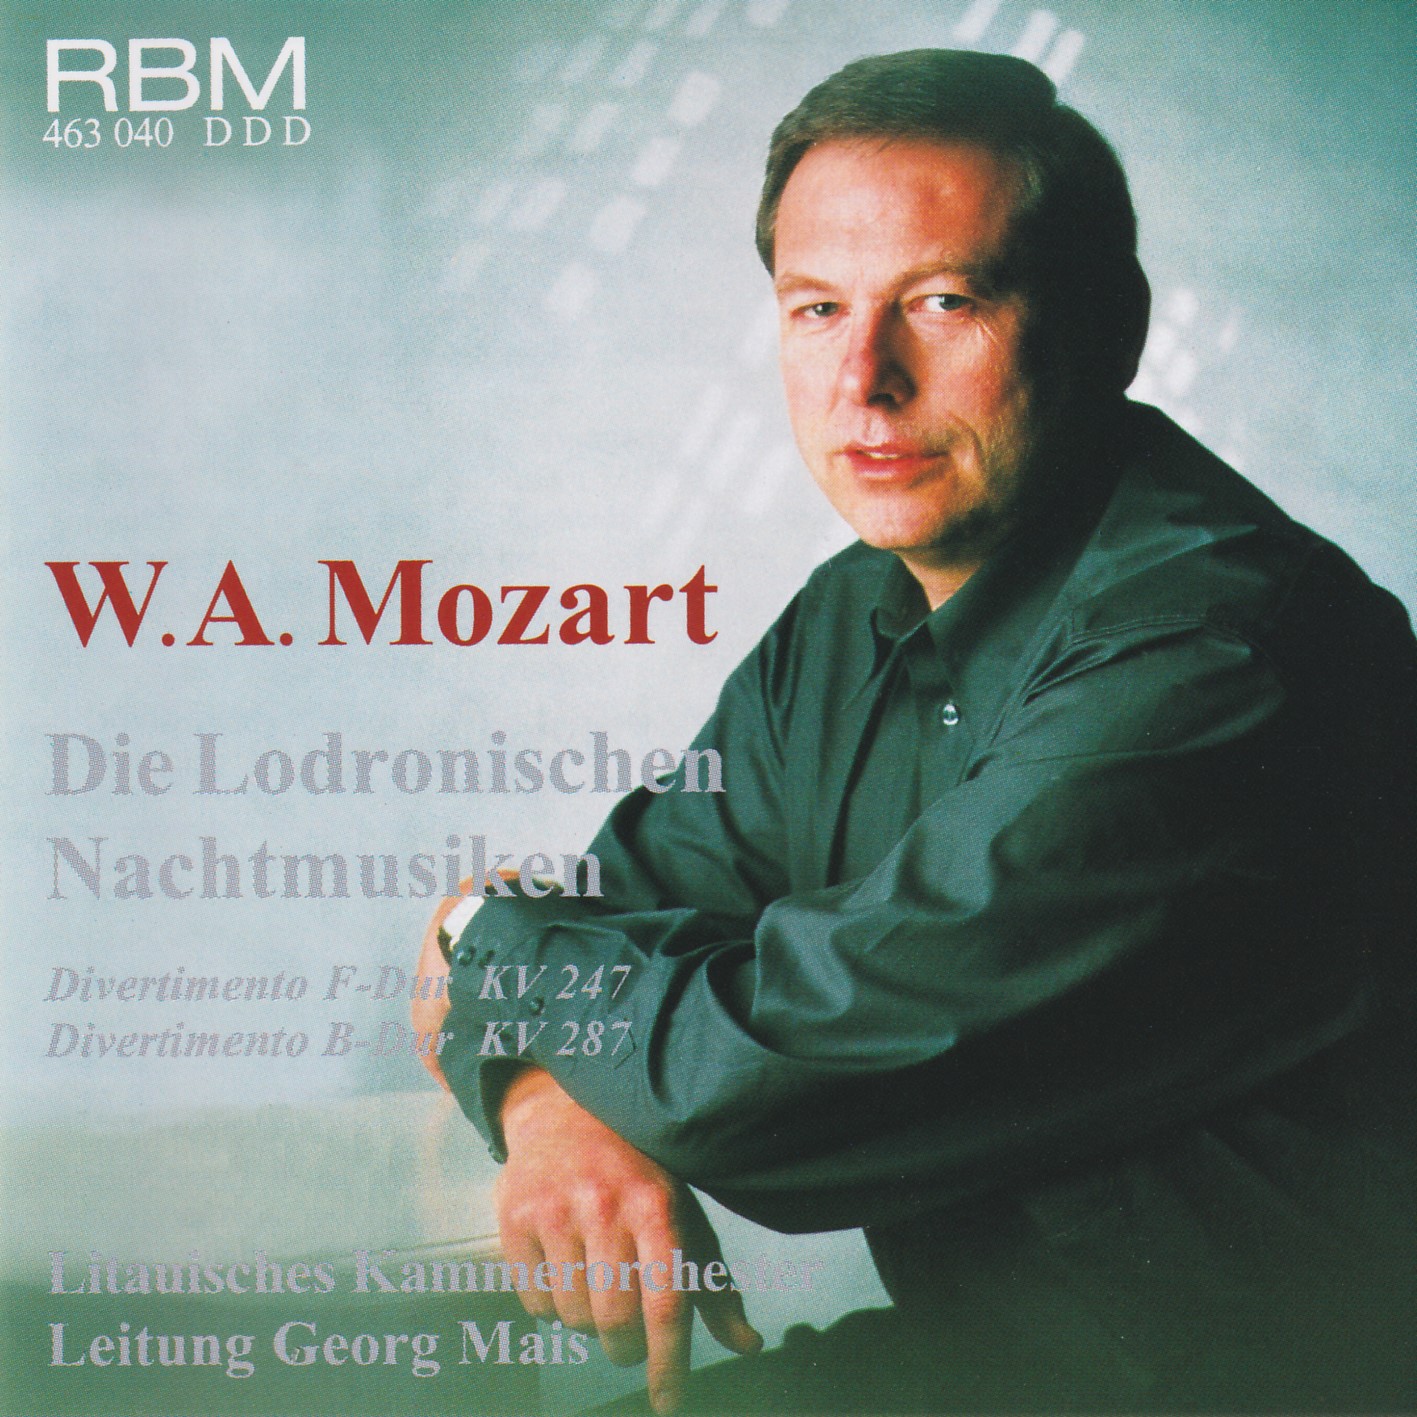 W. A. Mozart - Die Lodronischen Nachtmusiken